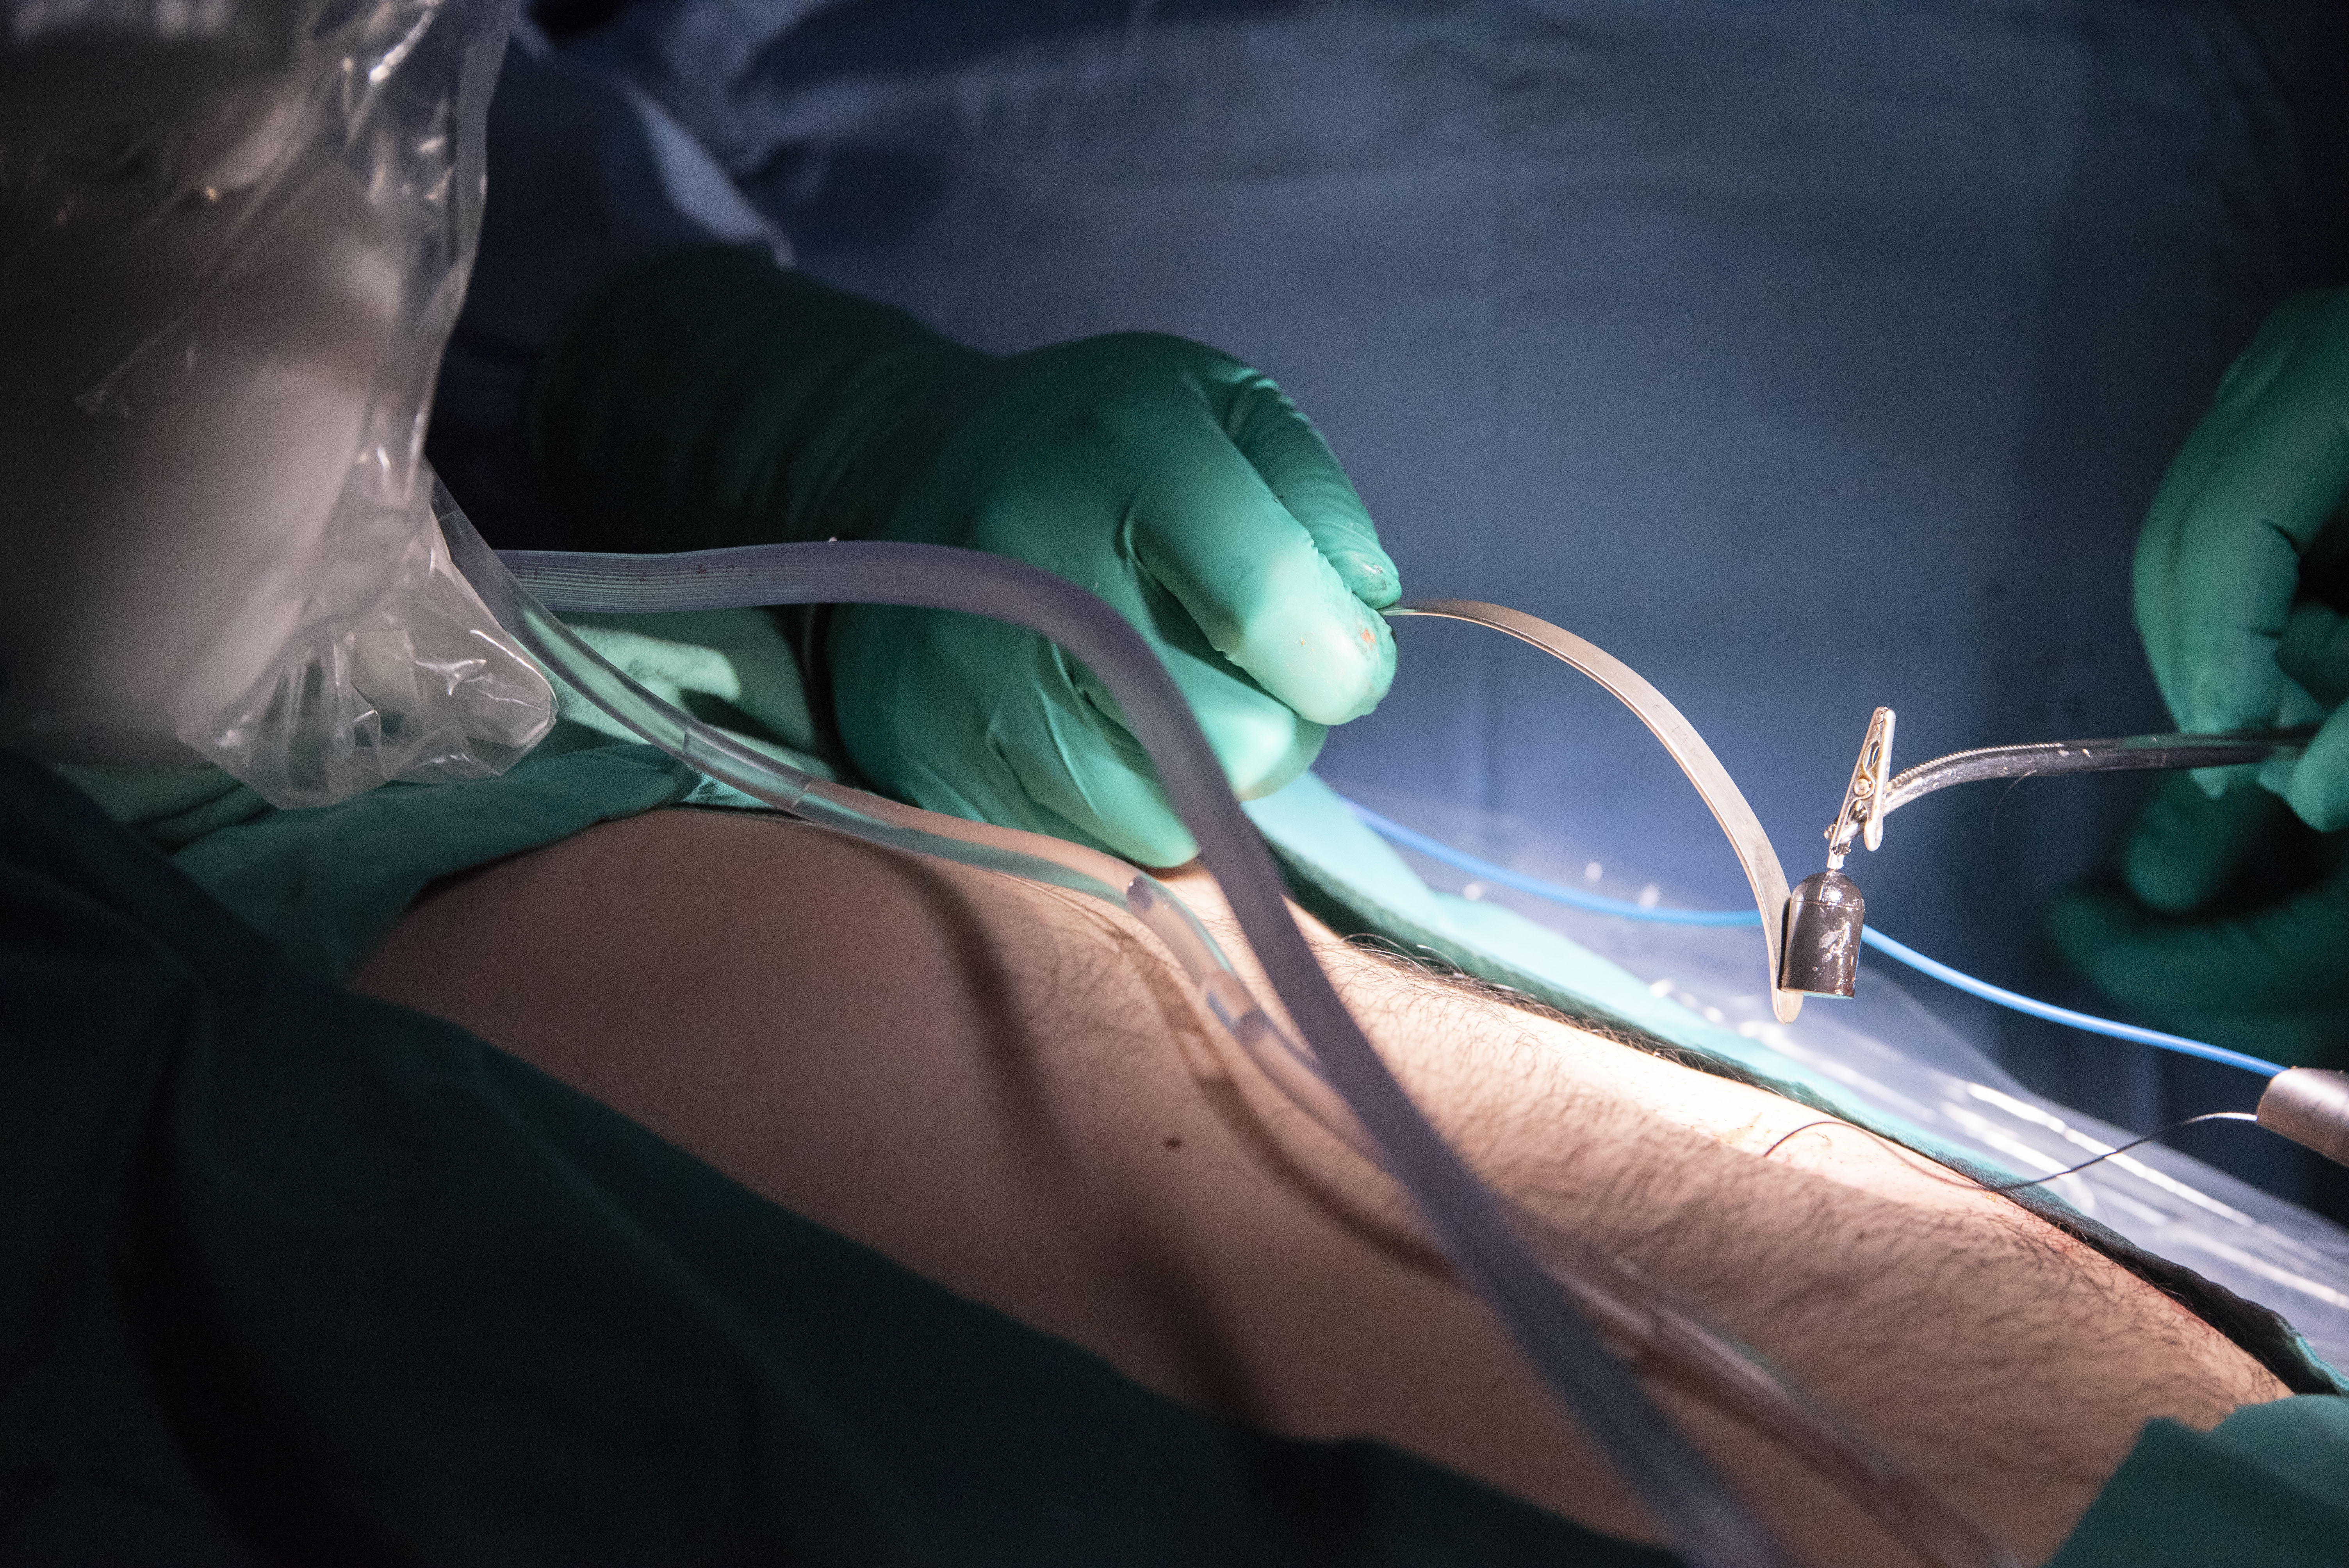 Técnica quirúrgica menos invasiva